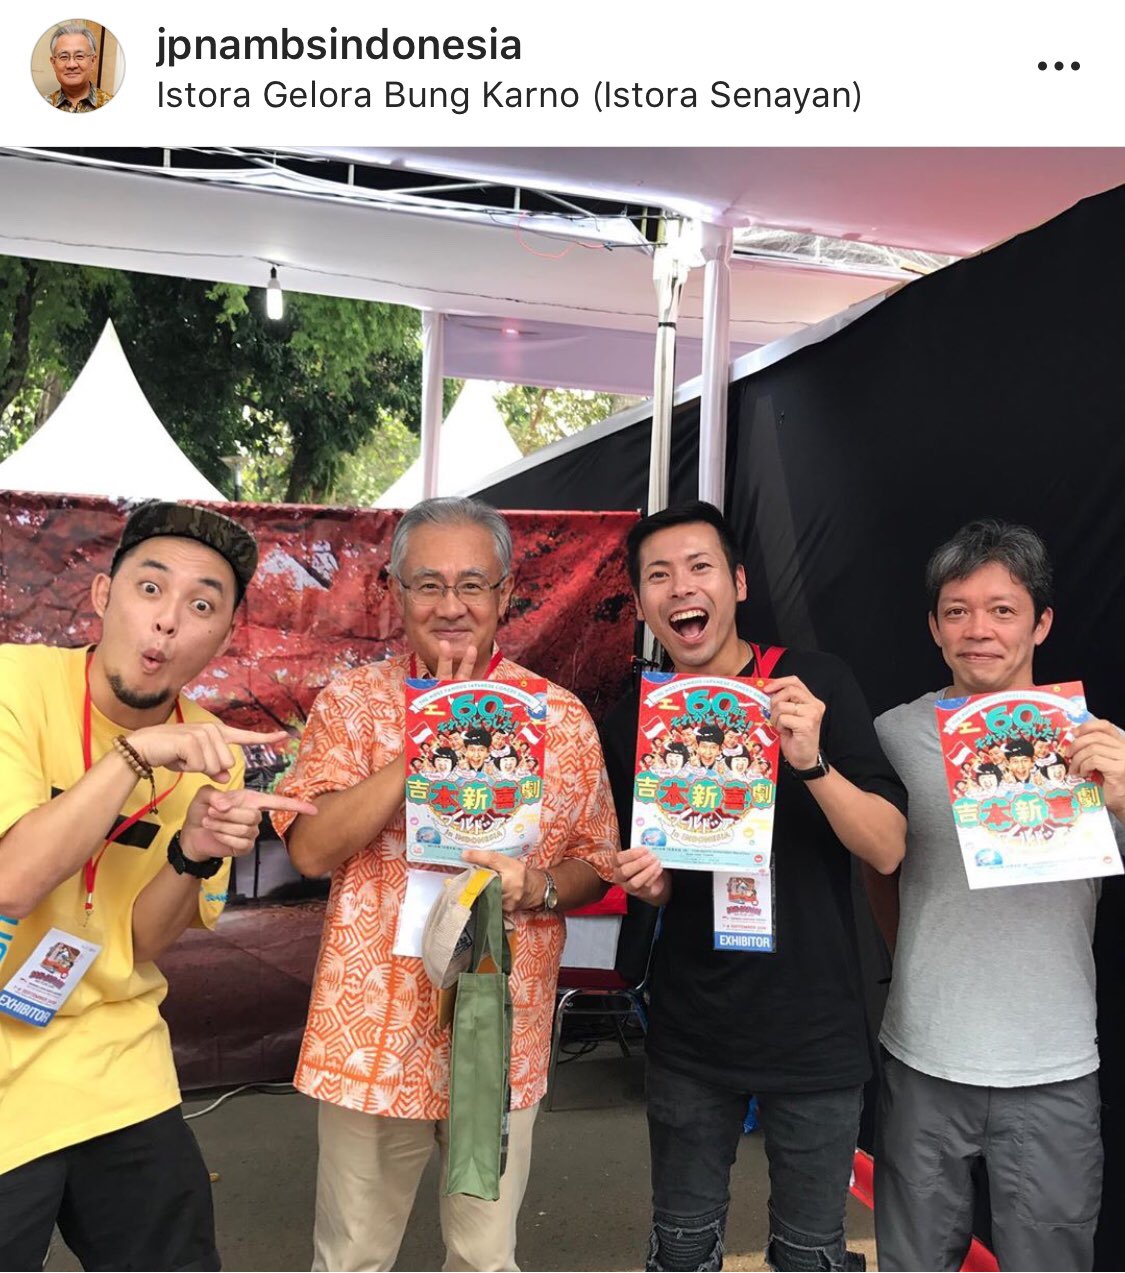 アキラ コンチネンタル フィーバー على تويتر 在インドネシア日本国大使館 石井大使様のインスタグラムでご紹介を頂きました ありがとうございます 吉本新喜劇inインドネシア